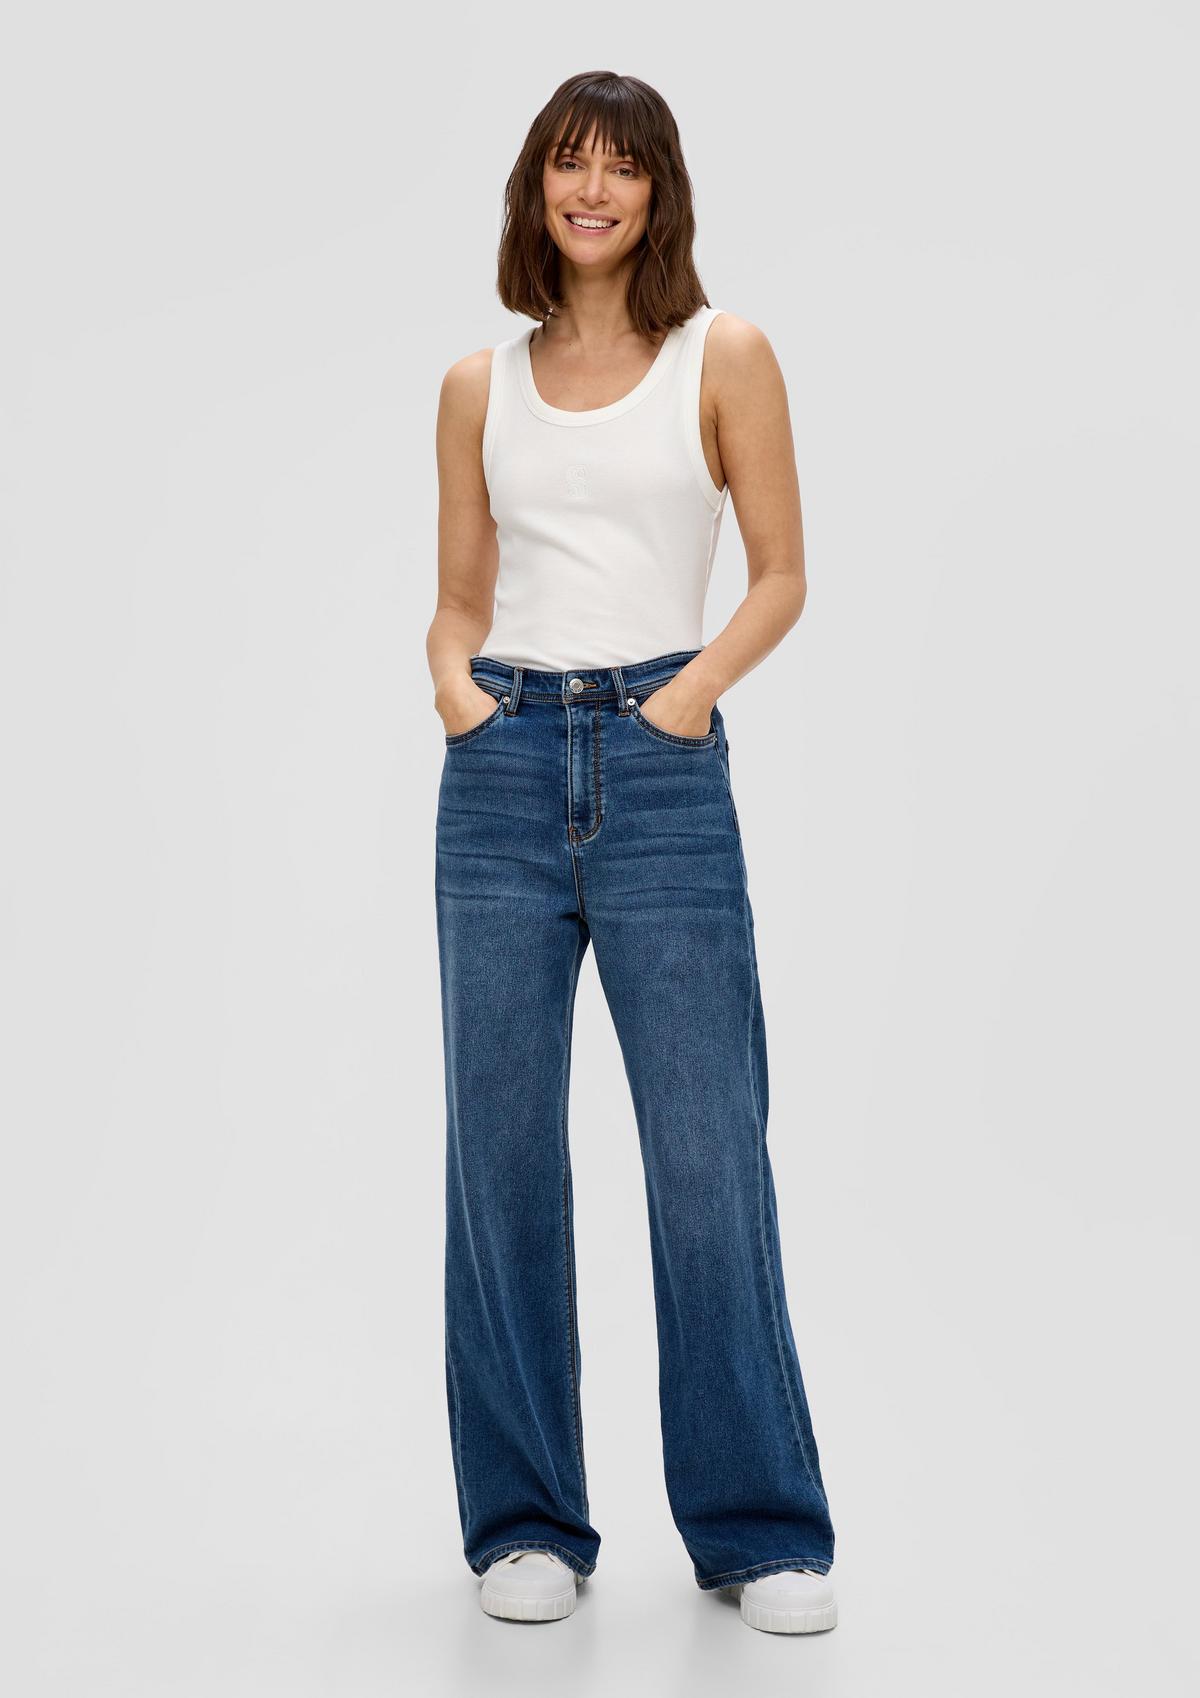 Suri Jeans / Regular Fit / High Rise / Wide Leg / Baumwollmix